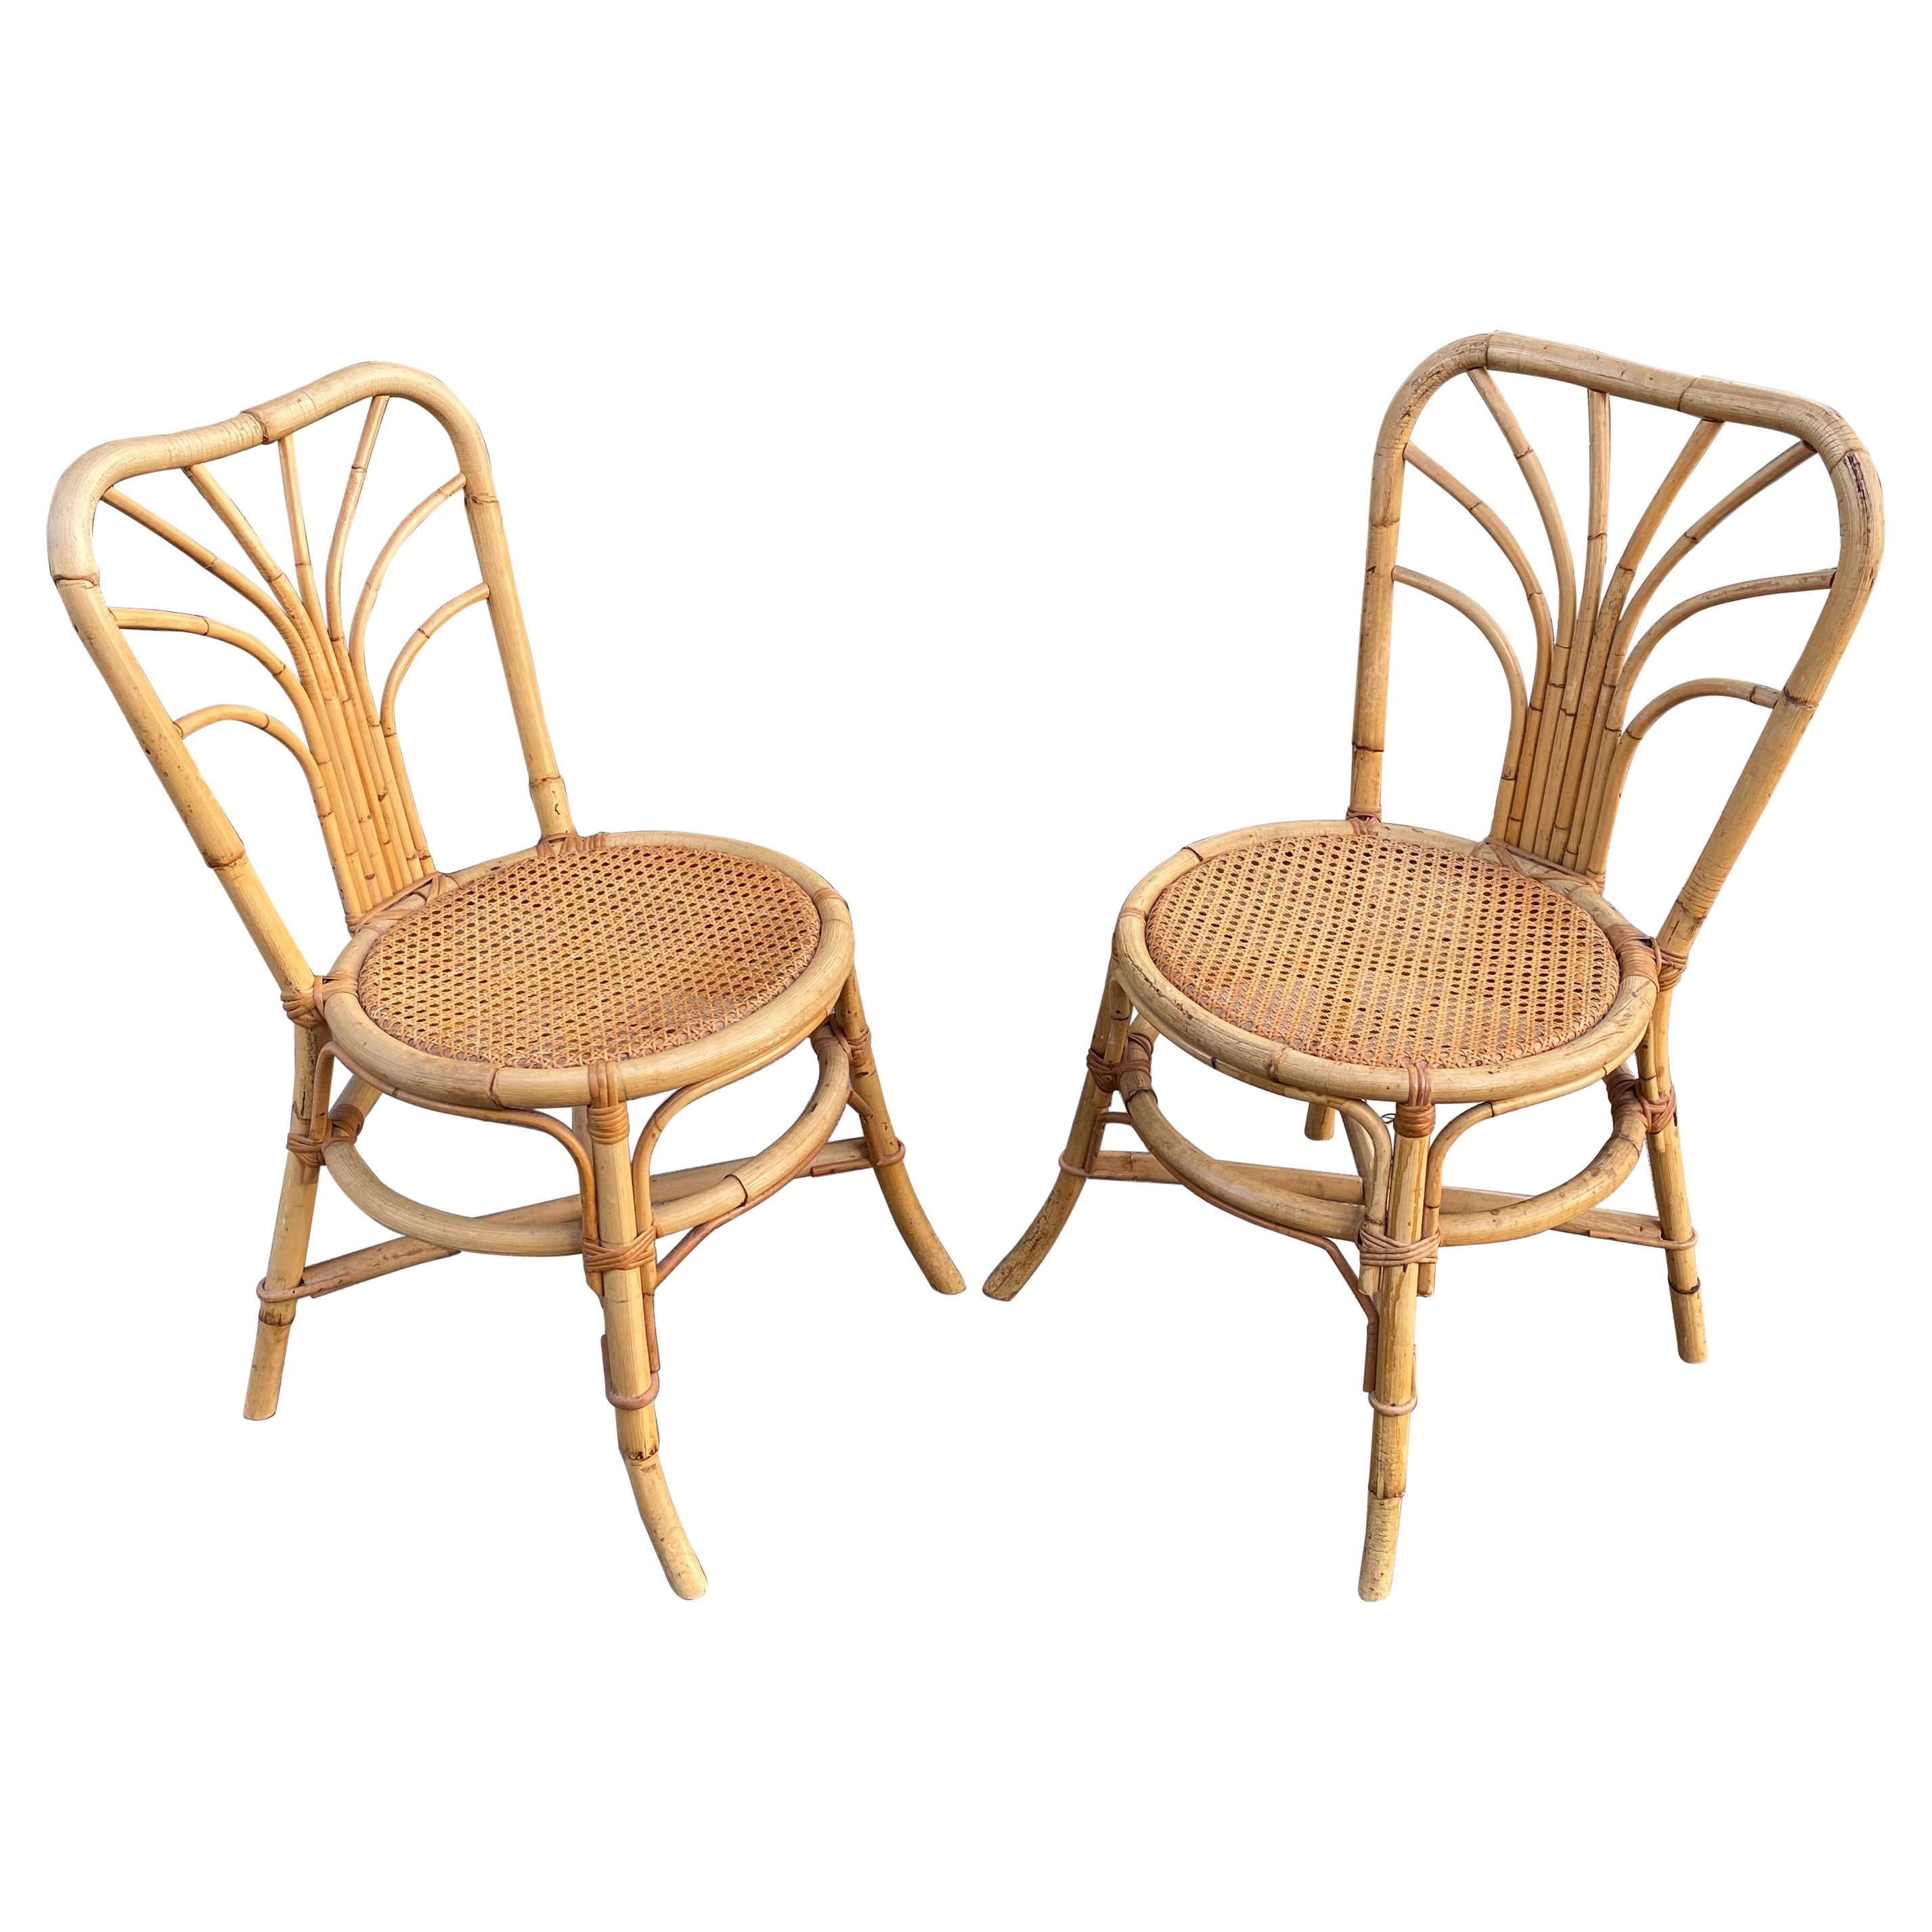 Deux chaises en bambou, datant d'environ 1960